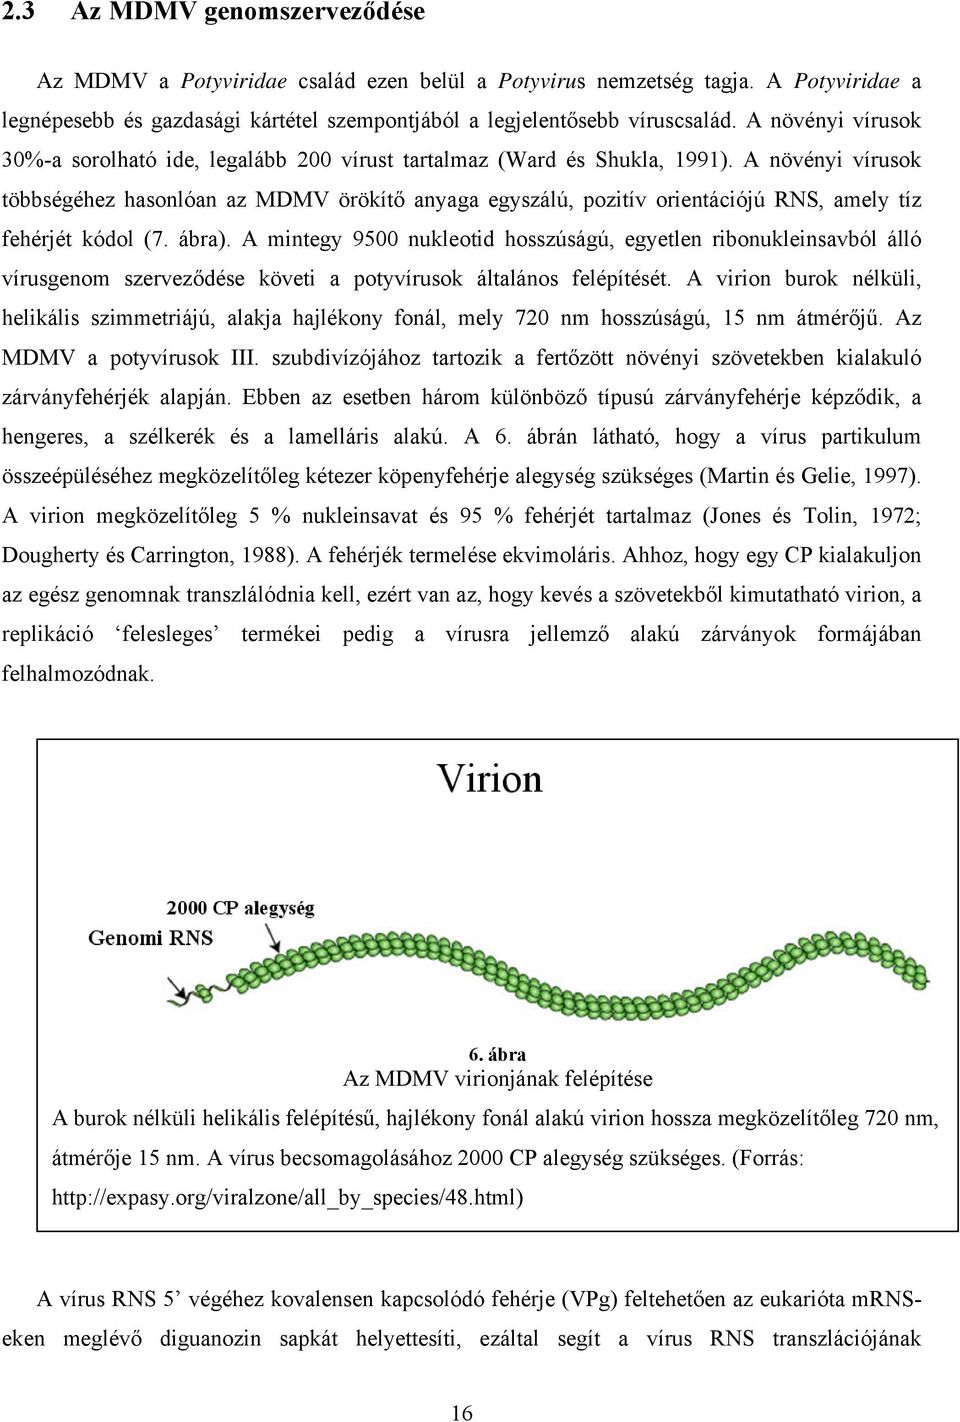 A növényi vírusok többségéhez hasonlóan az MDMV örökítő anyaga egyszálú, pozitív orientációjú RNS, amely tíz fehérjét kódol (7. ábra).